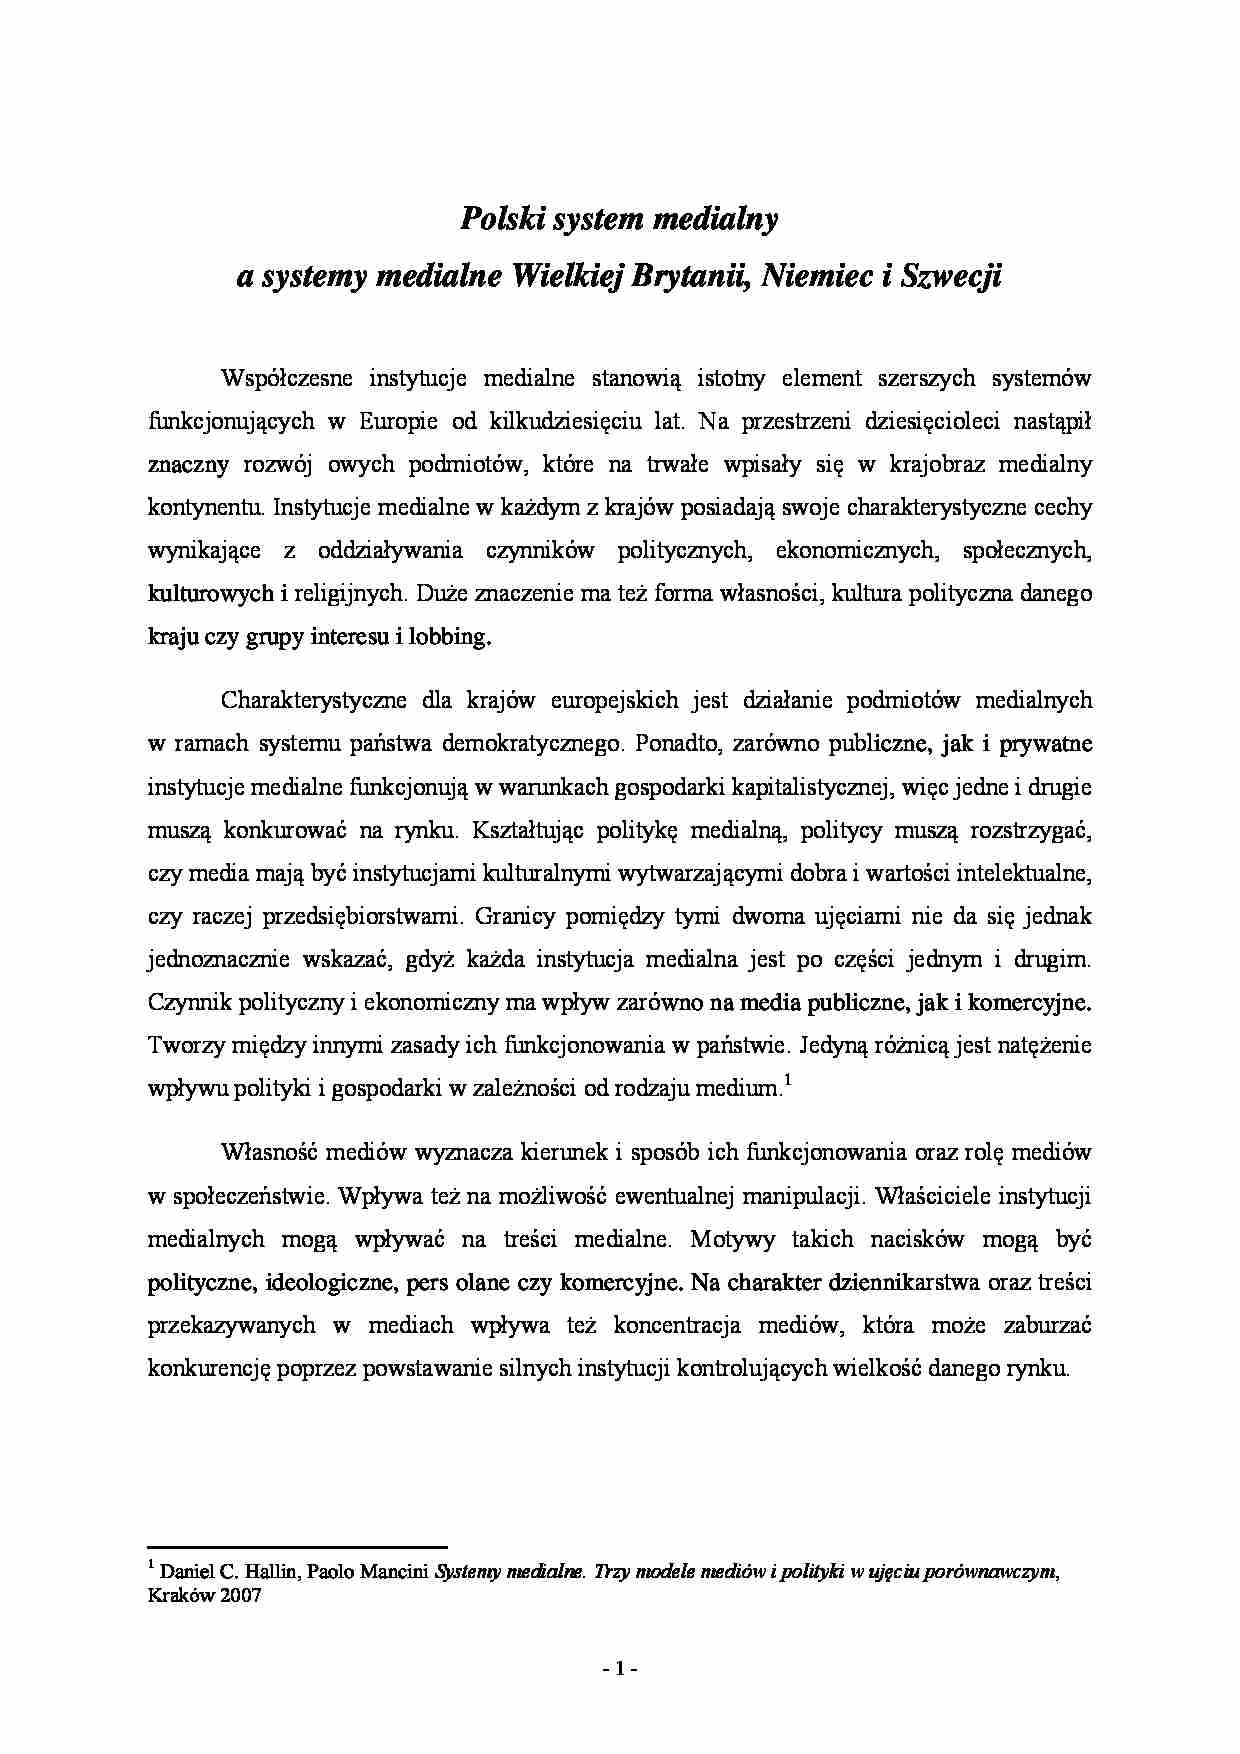 DZIENNIKARSTWO Polski system medialny a systemy medialne Wielkiej Brytanii, Niemiec i Szwecji - referat - strona 1